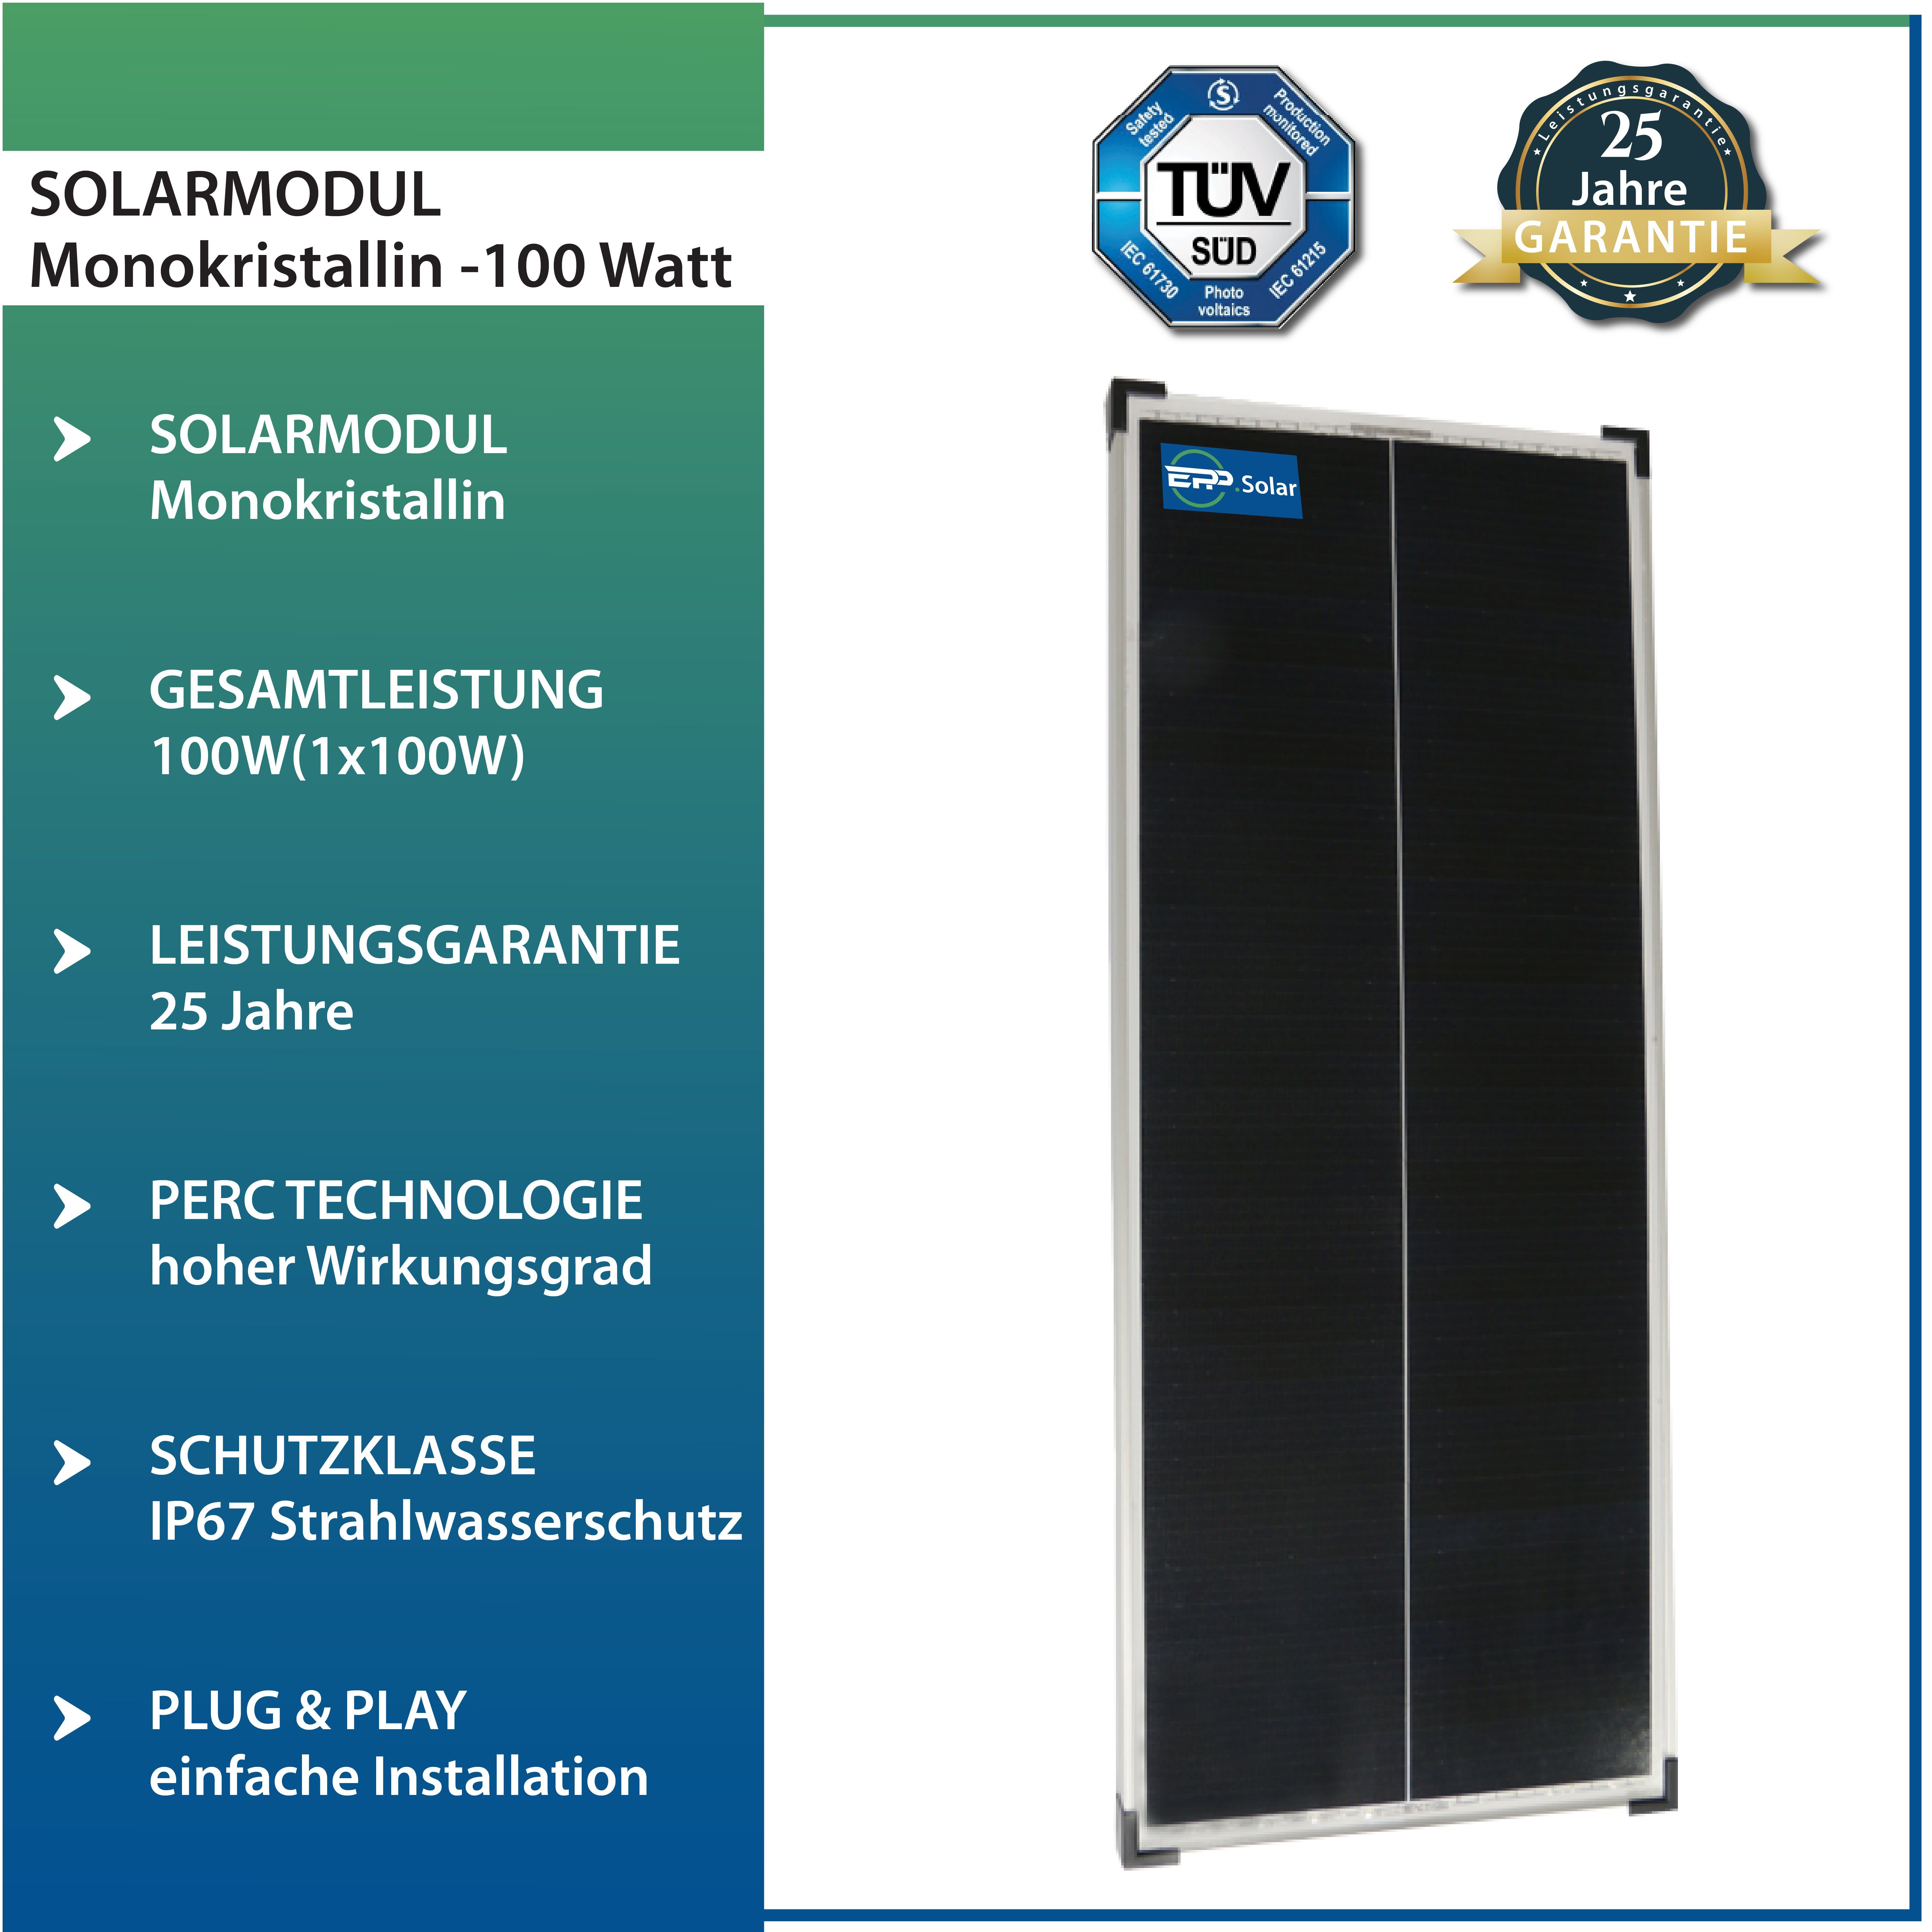 Wohnmobile Silber-46 Camper, 5X100W & Wohnwagen Solarmodul Campergold für Solaranlage Mono